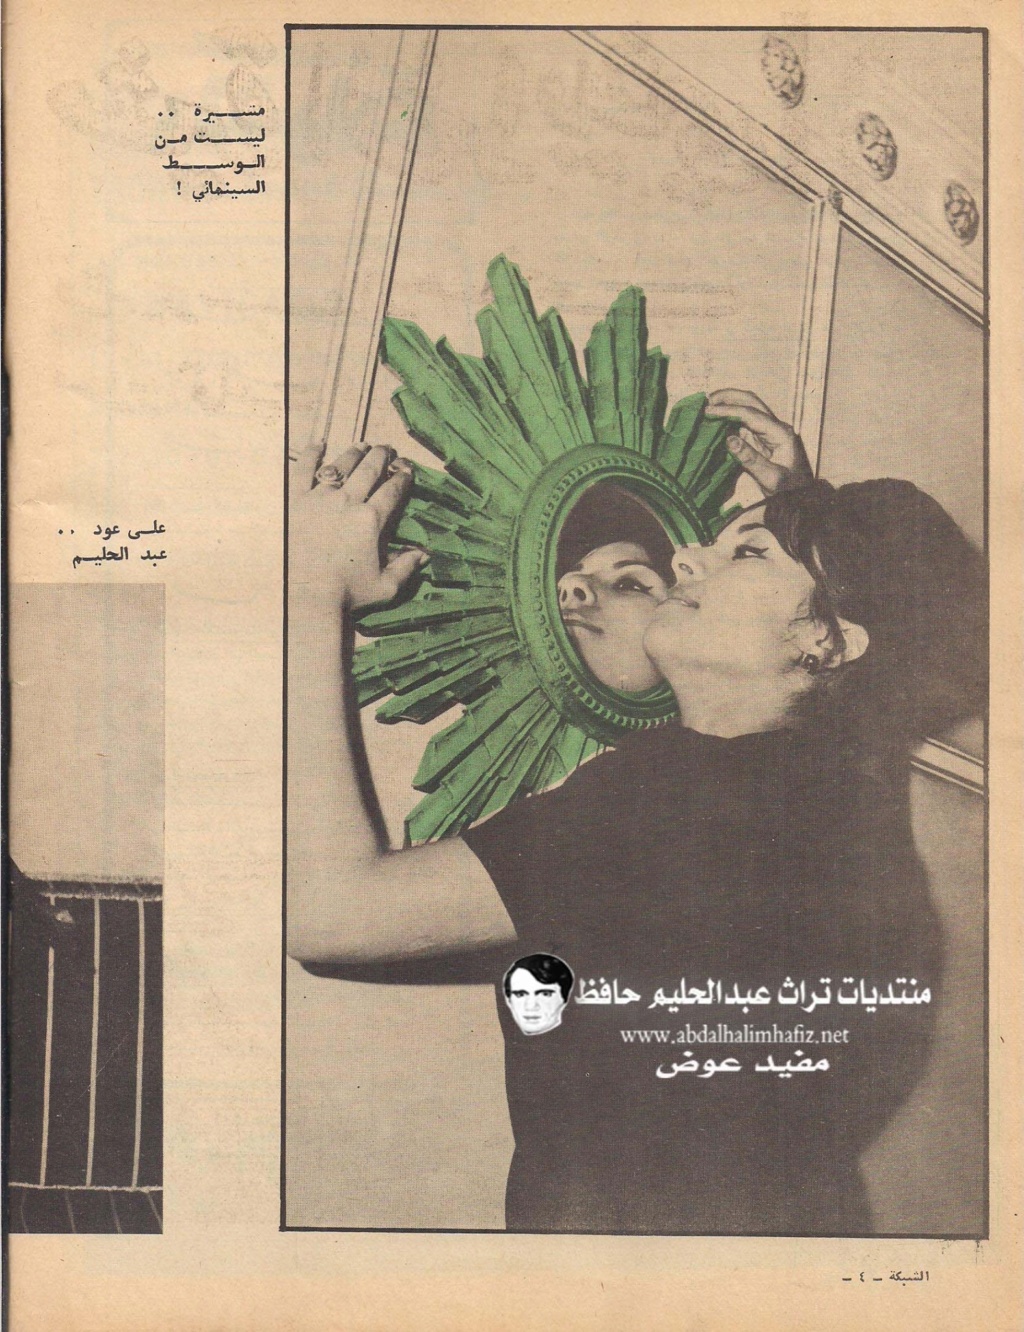 مقال صحفي : مشيرة الطرابيشي تطرد سعاد حسني من قلب عبدالحليم حافظ 1966 م 1172